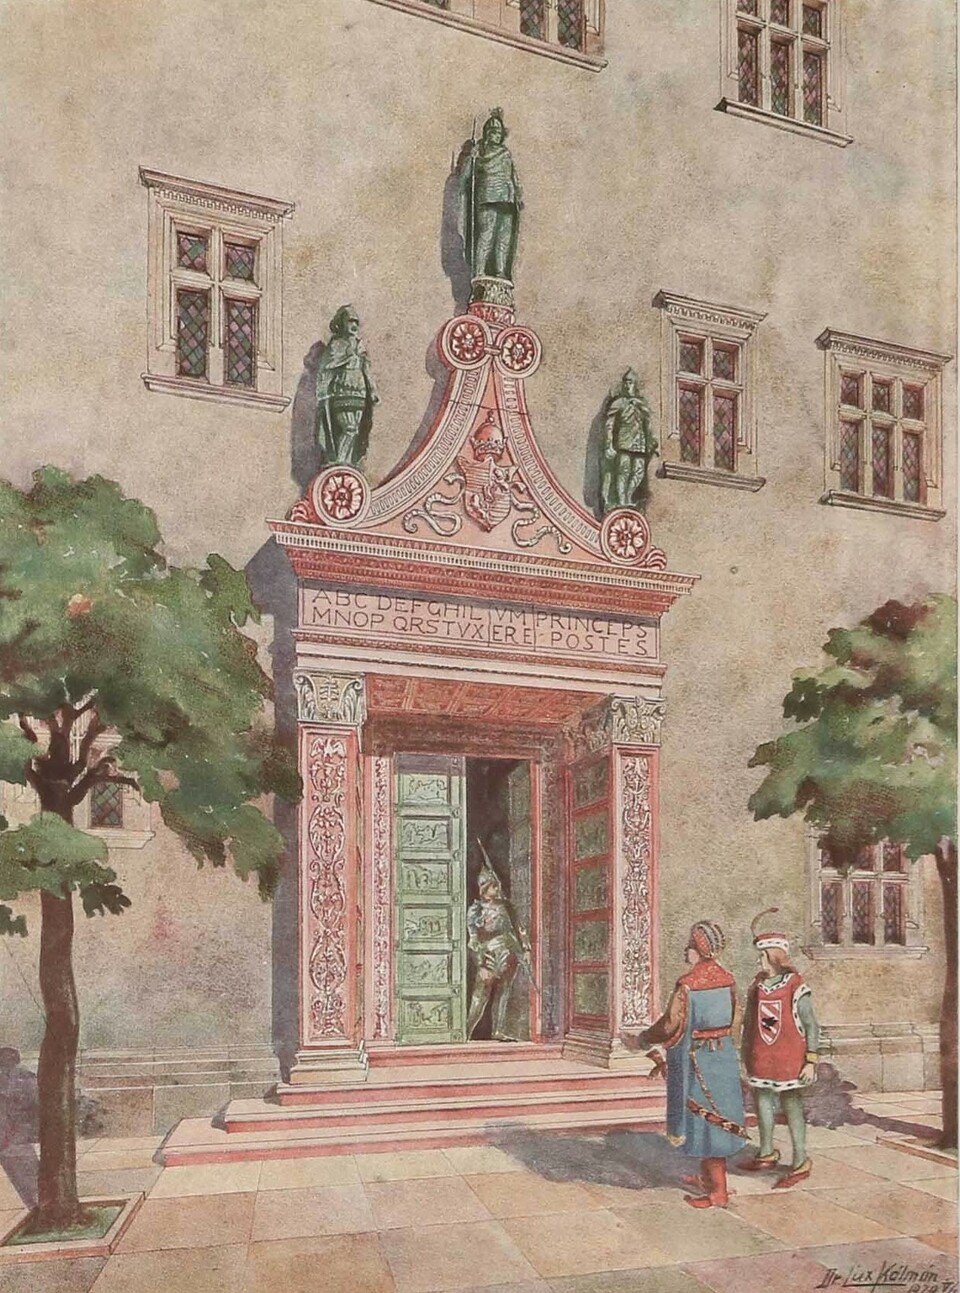 A budai királyi vár belső palotáinak főbejárata, Forrás: Dr. Lux Kálmán: A budai várpalota Mátyás király korában, szerzői kiadás, 1920.